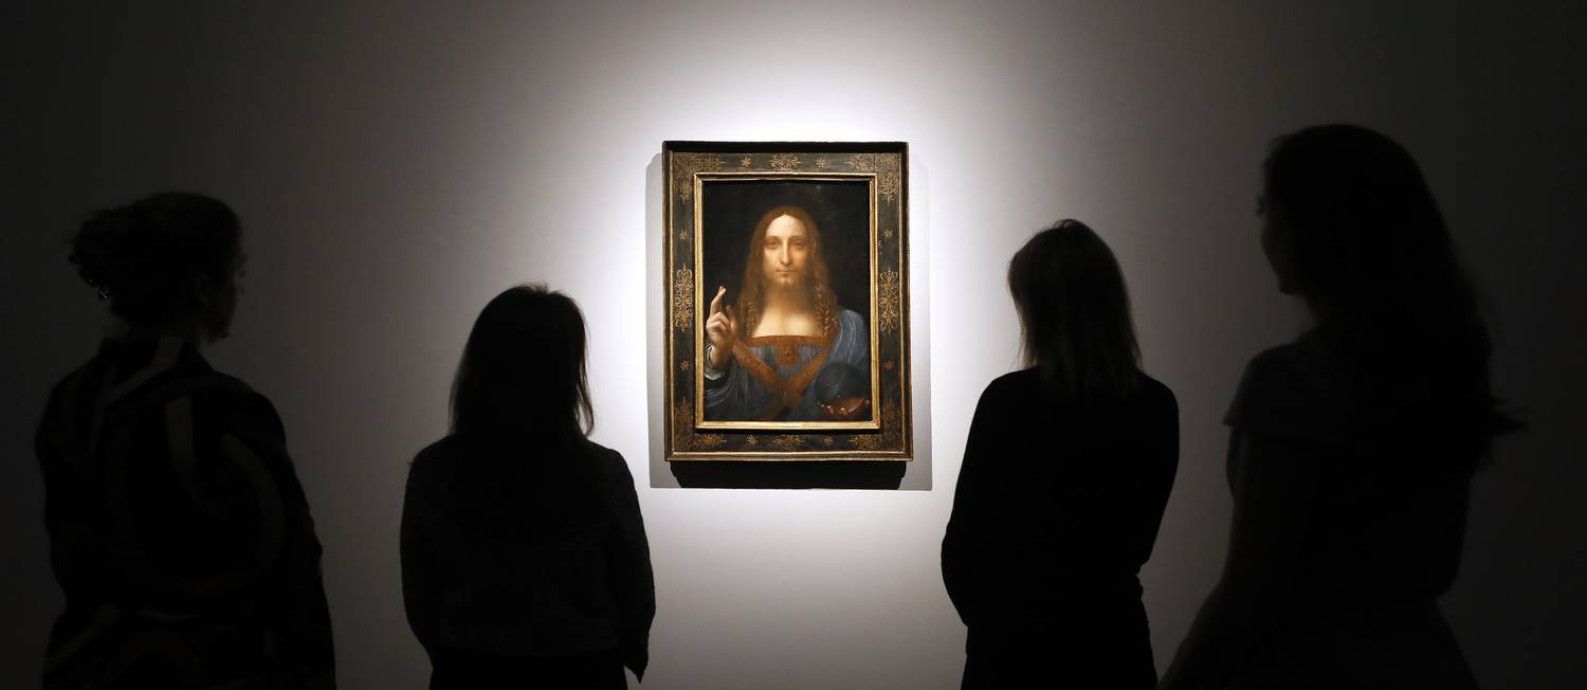 Da Vinci e “Salvator Mundi”, o quadro mais caro do mundo